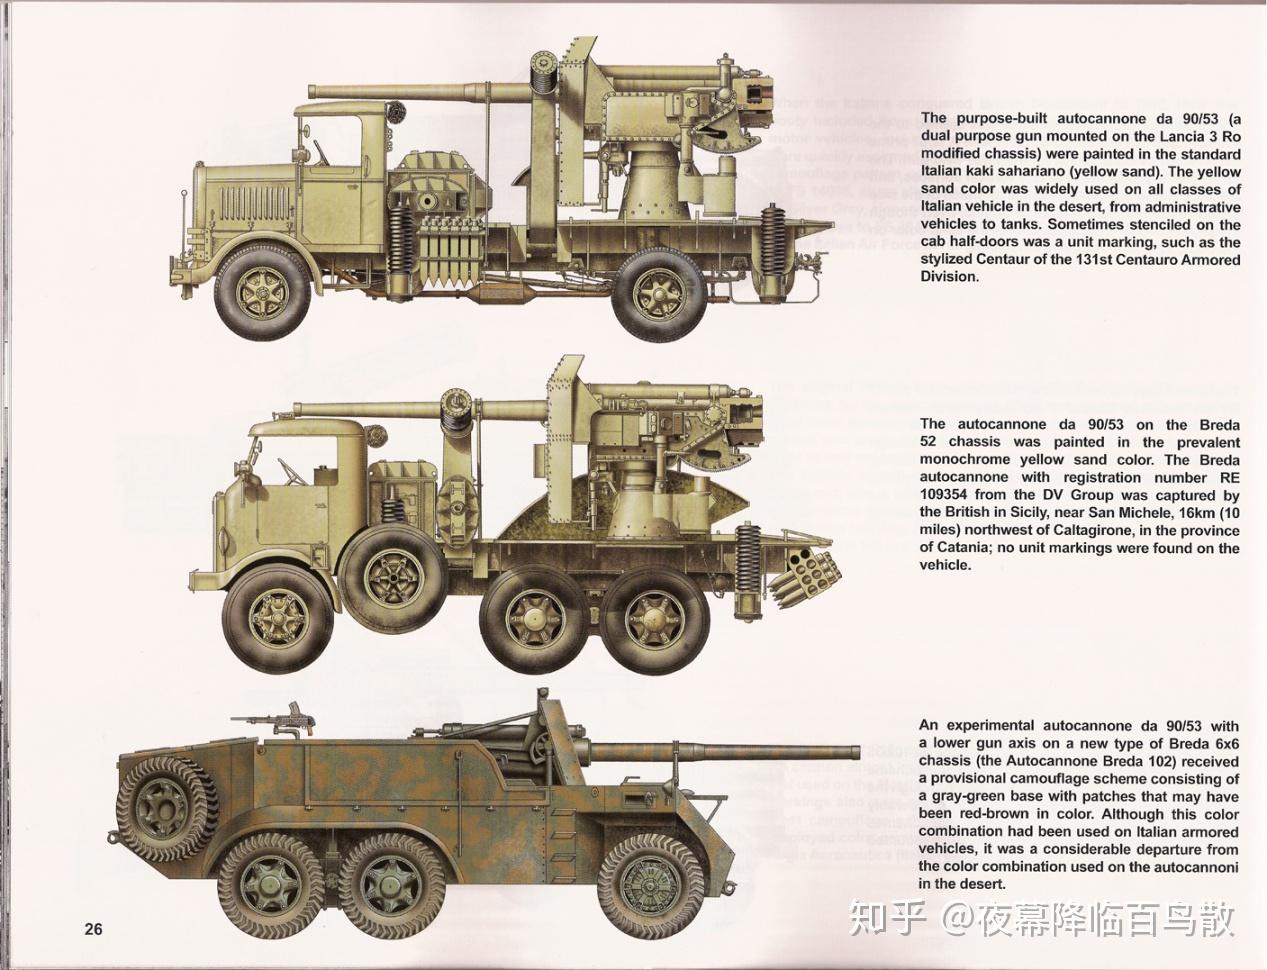 二战之前,世界各国对于如何使用装甲车有两种不同的思路